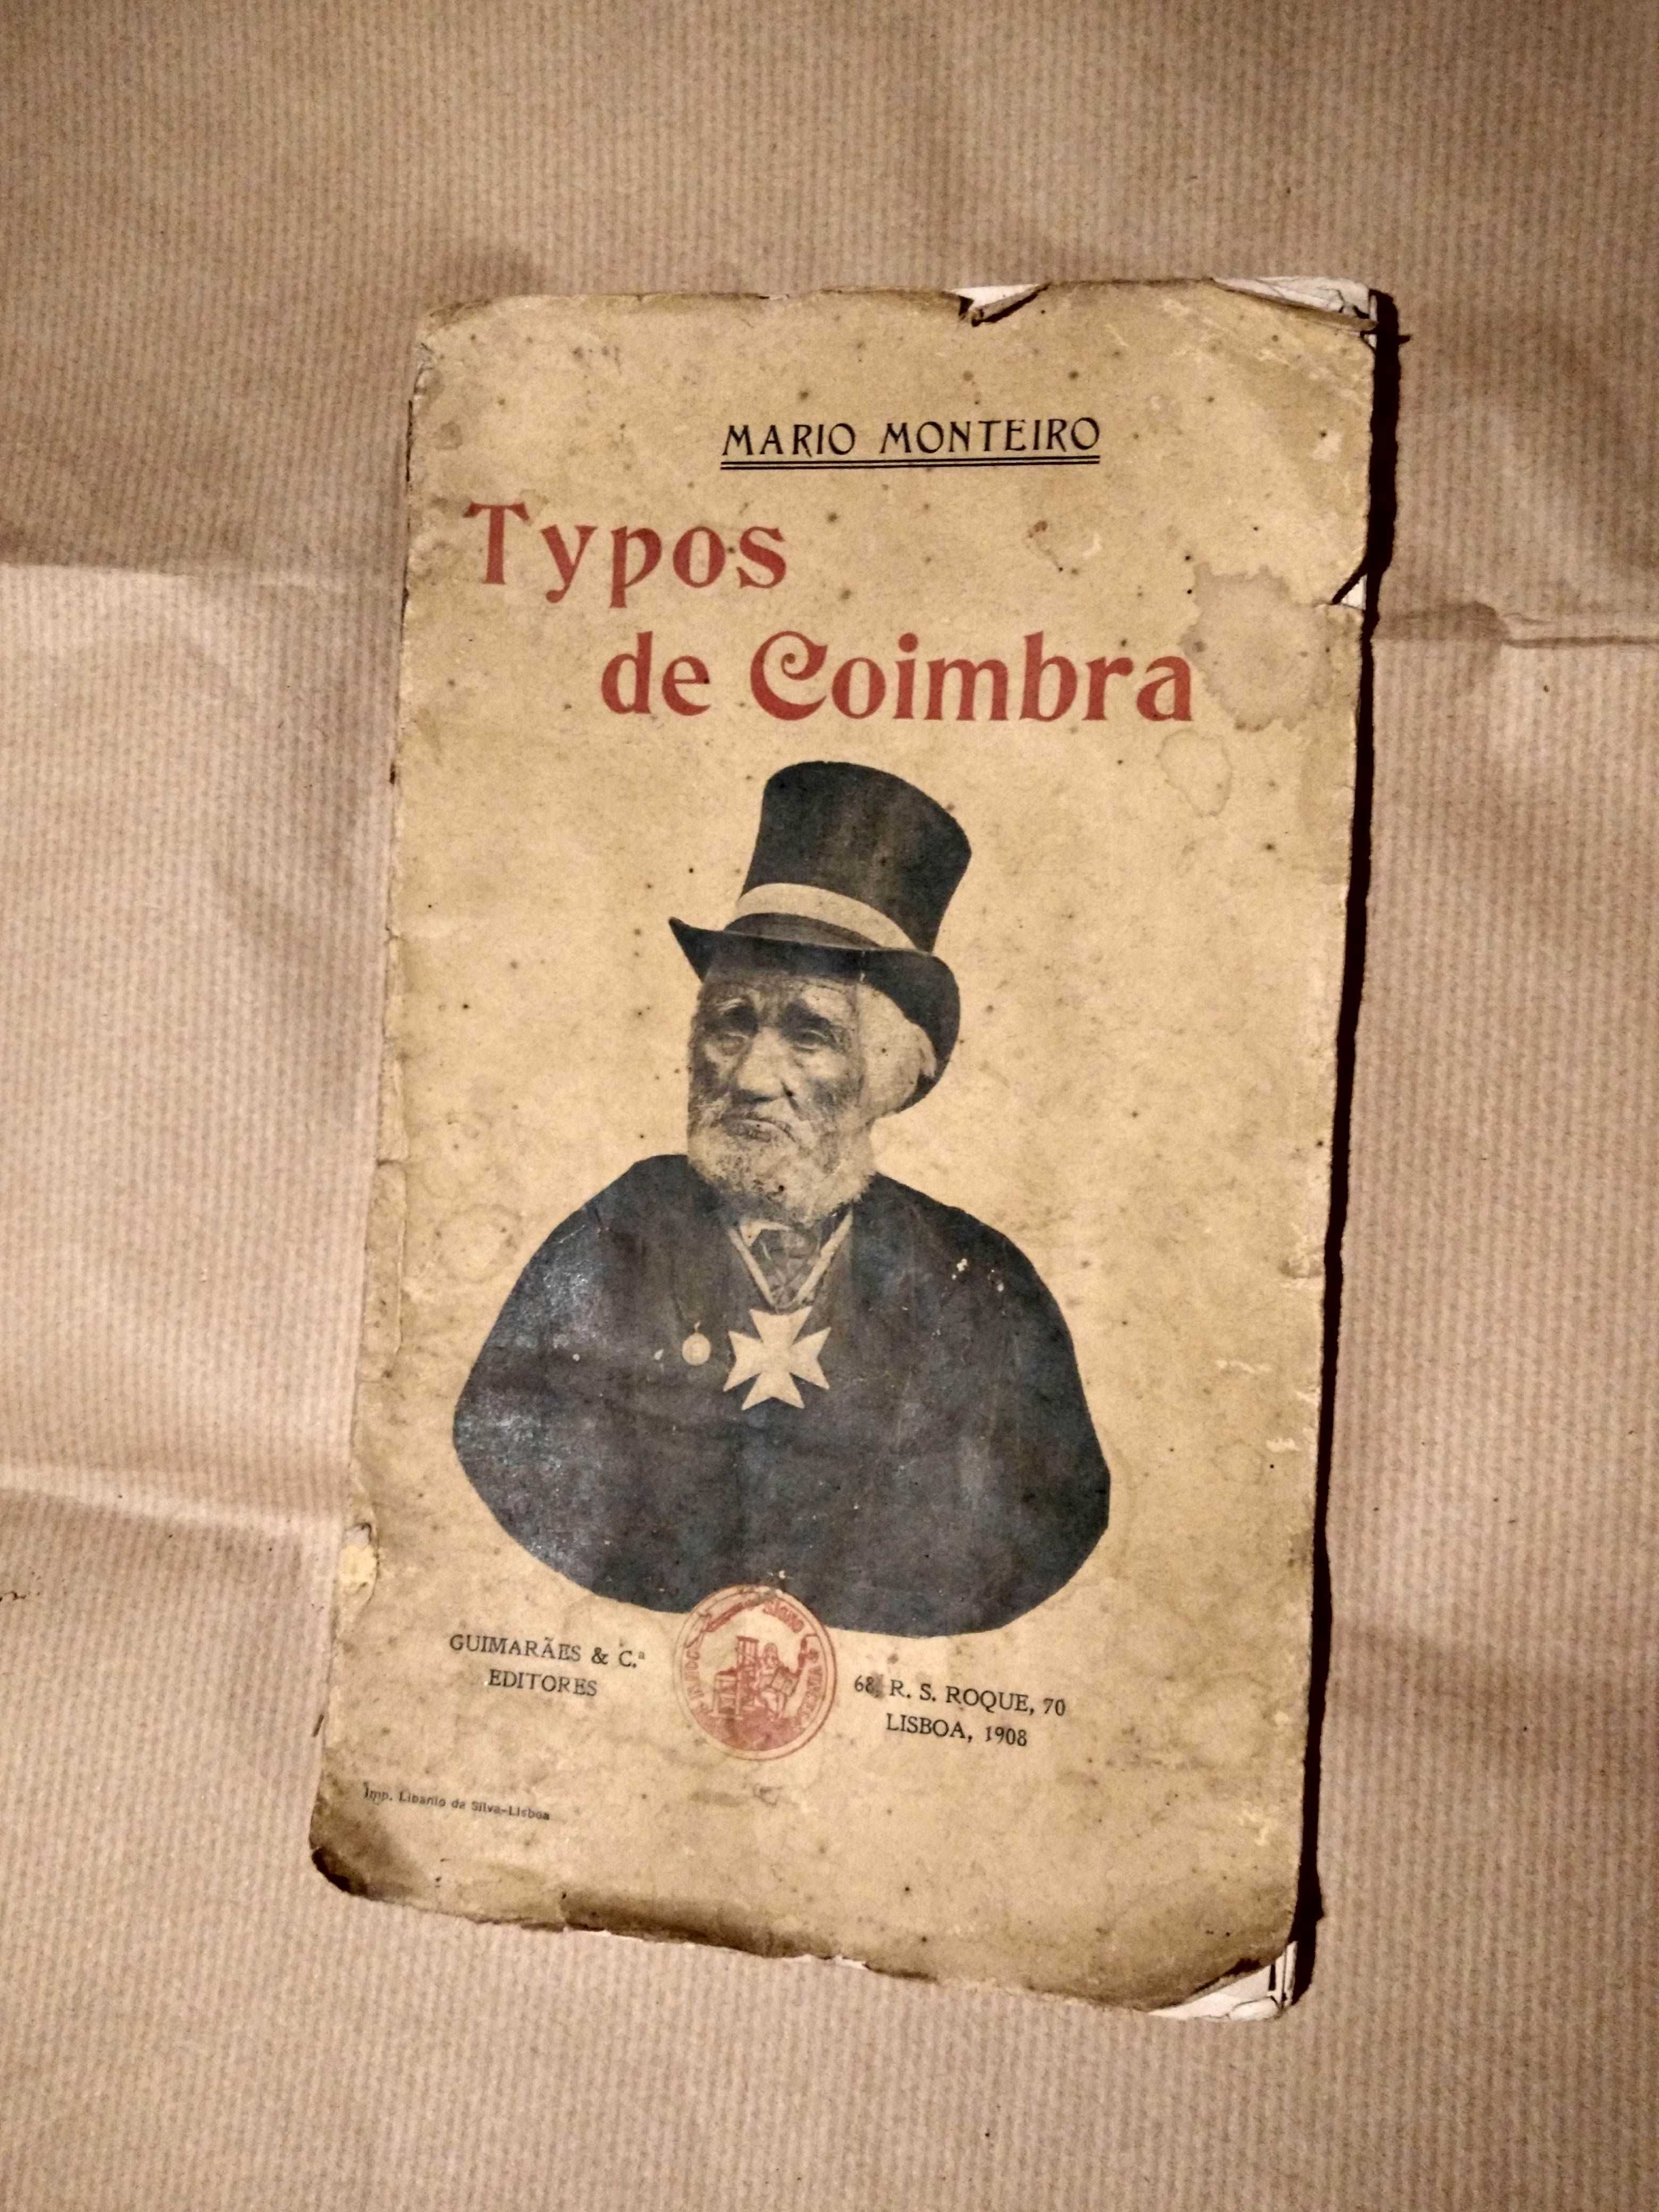 Typos de Coimbra - Mário Monteiro - 1908 - Muito Raro